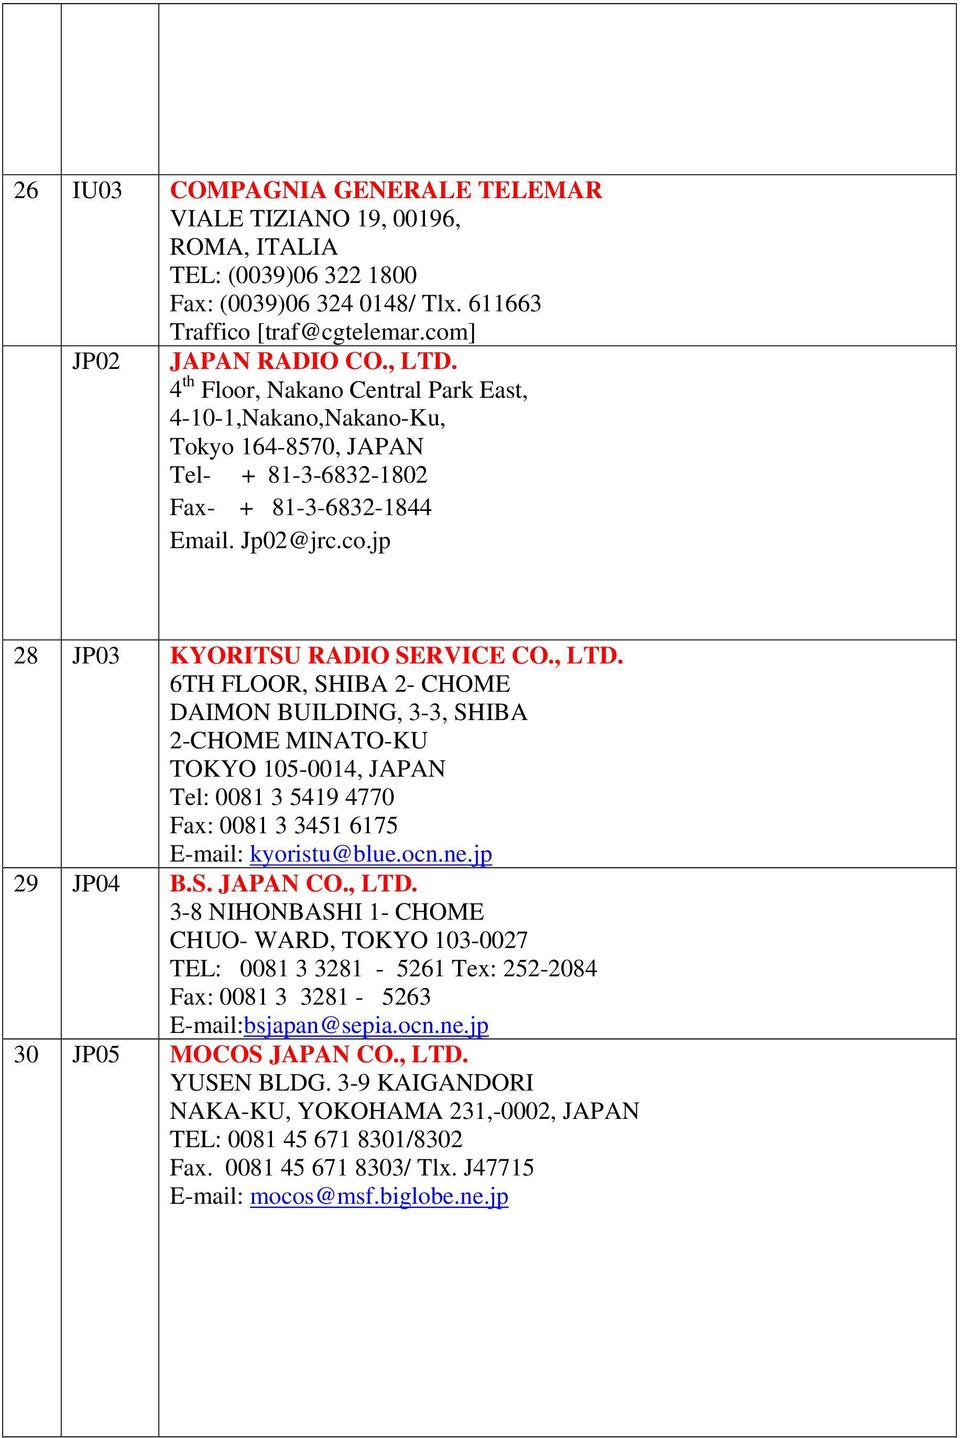 6TH FLOOR, SHIBA 2- CHOME DAIMON BUILDING, 3-3, SHIBA 2-CHOME MINATO-KU TOKYO 105-0014, JAPAN Tel: 0081 3 5419 4770 Fax: 0081 3 3451 6175 E-mail: kyoristu@blue.ocn.ne.jp 29 JP04 B.S. JAPAN CO., LTD.